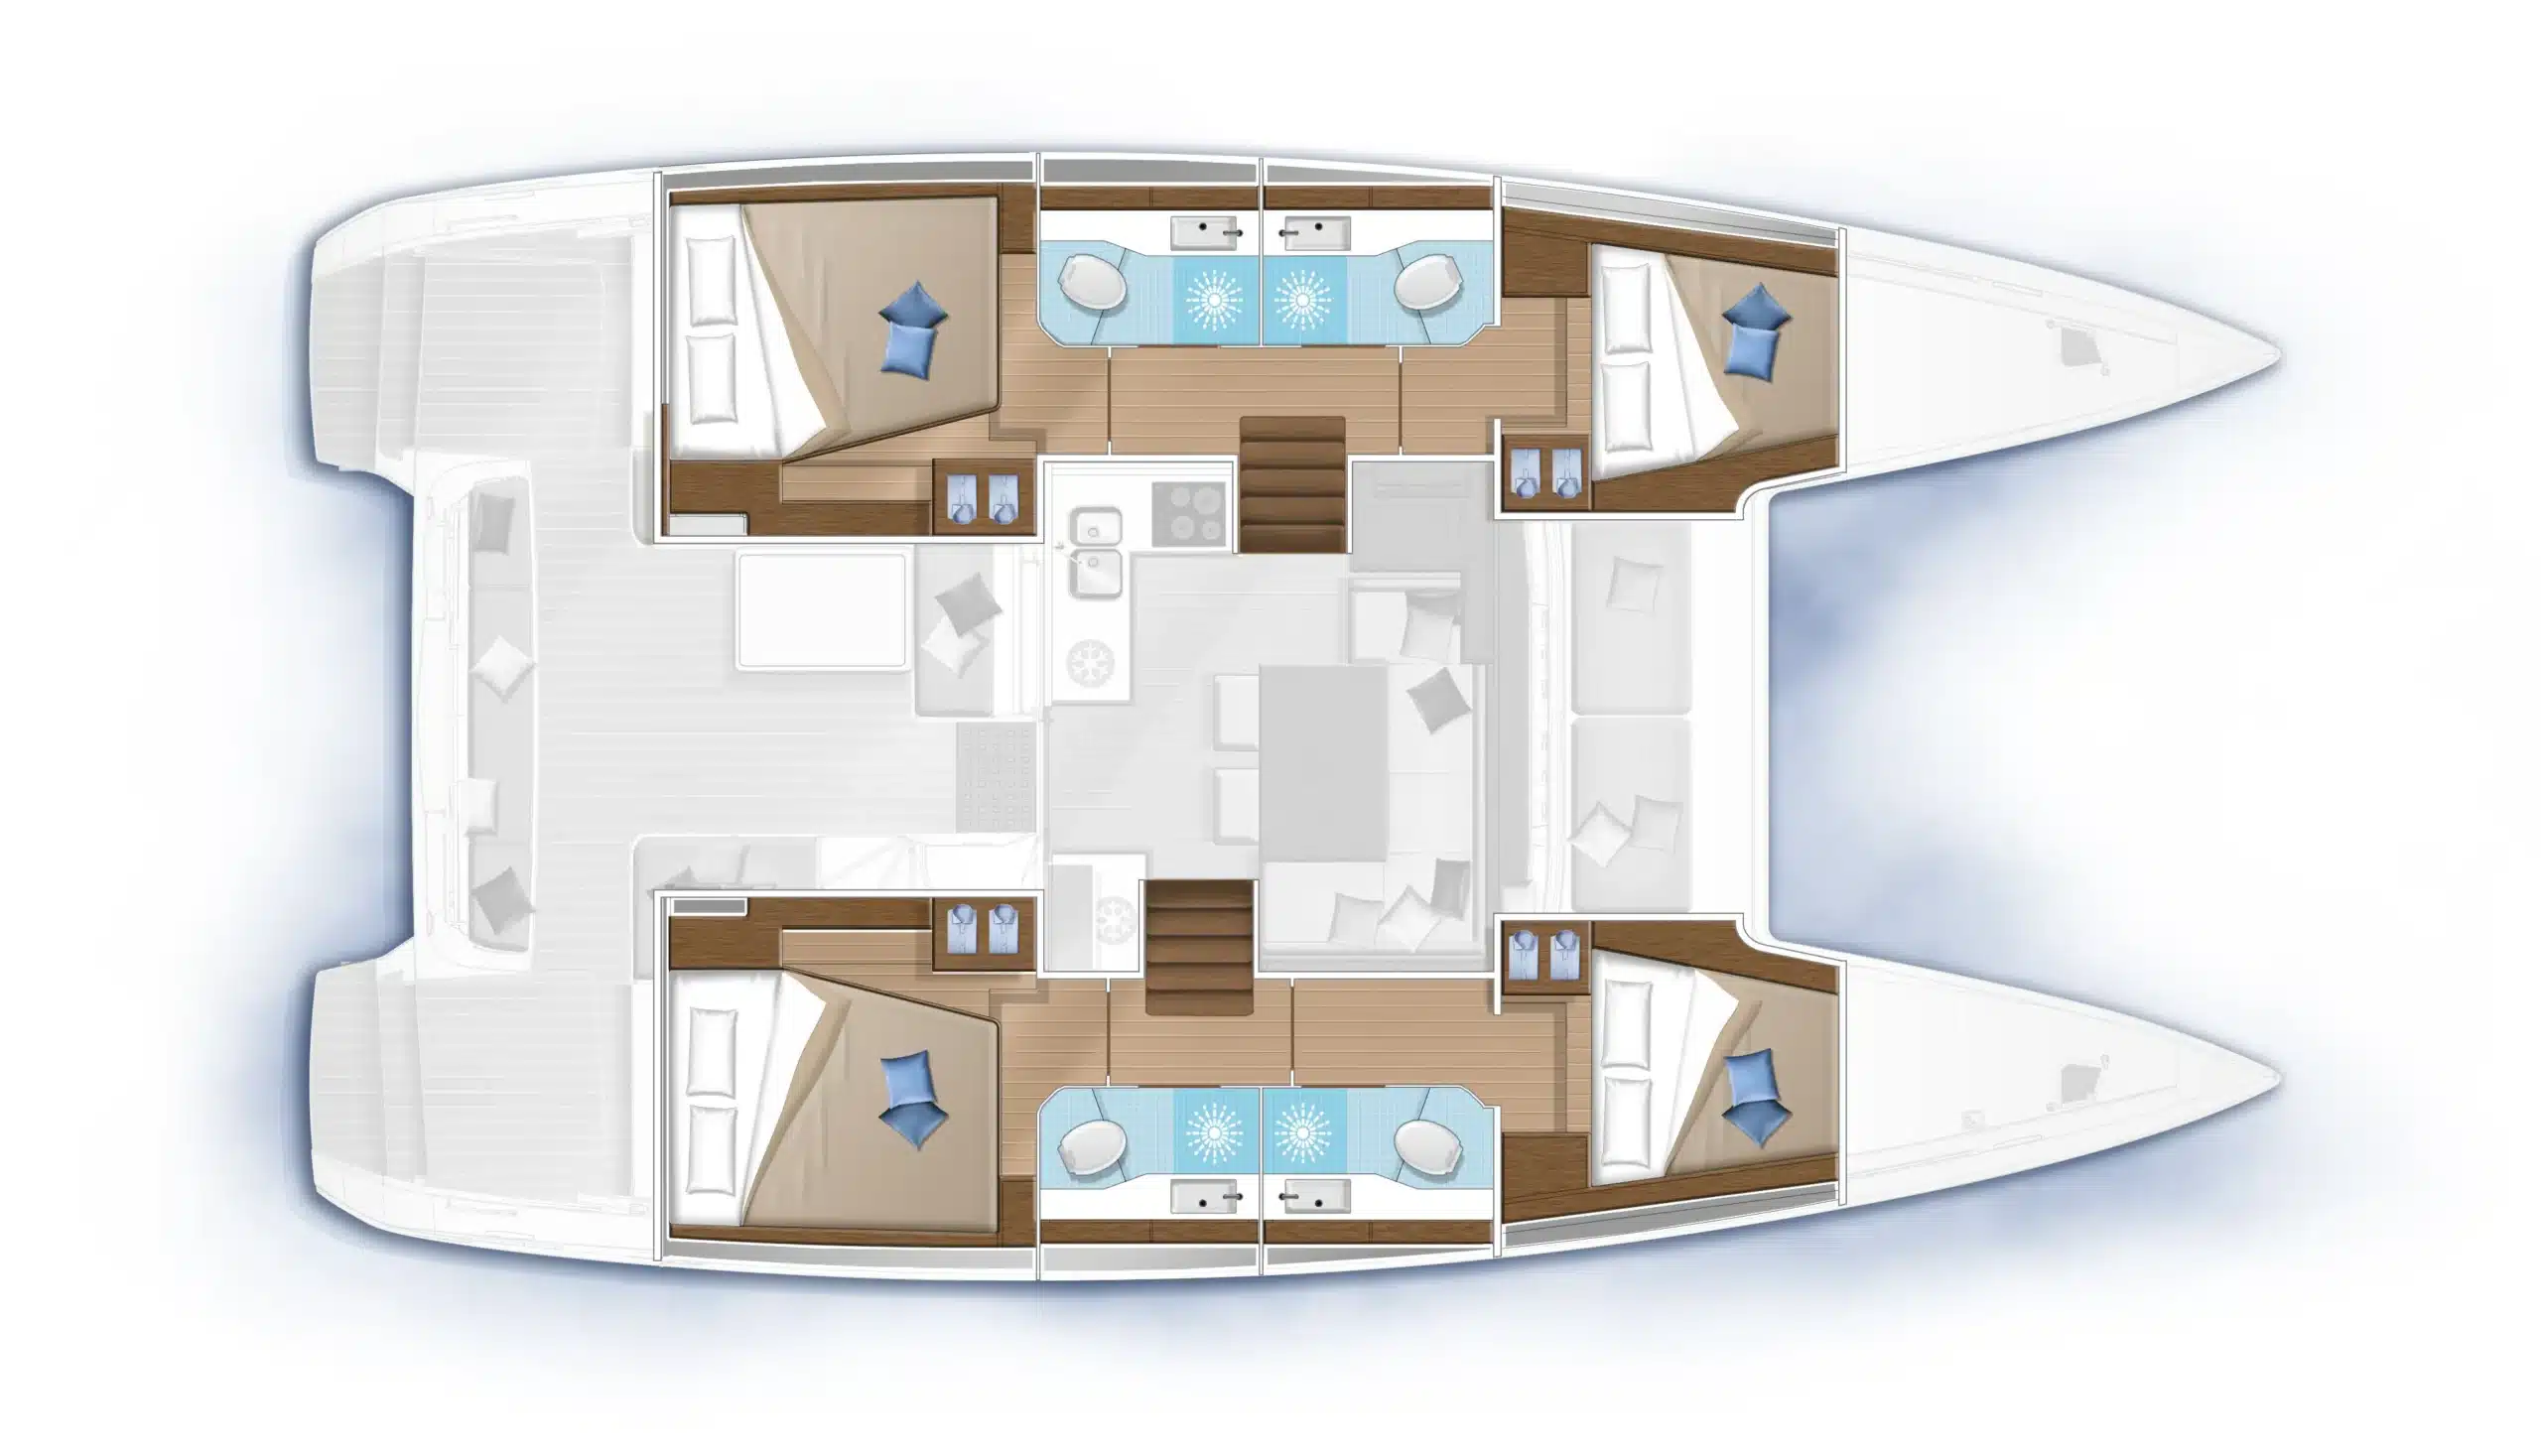 3D-Grundriss des Innenraums eines Luxus-Katamarans. Der Plan zeigt die Anordnung der Schlafzimmersuiten, Badezimmer, eines Küchenbereichs und eines gemeinsamen Wohnbereichs von oben.